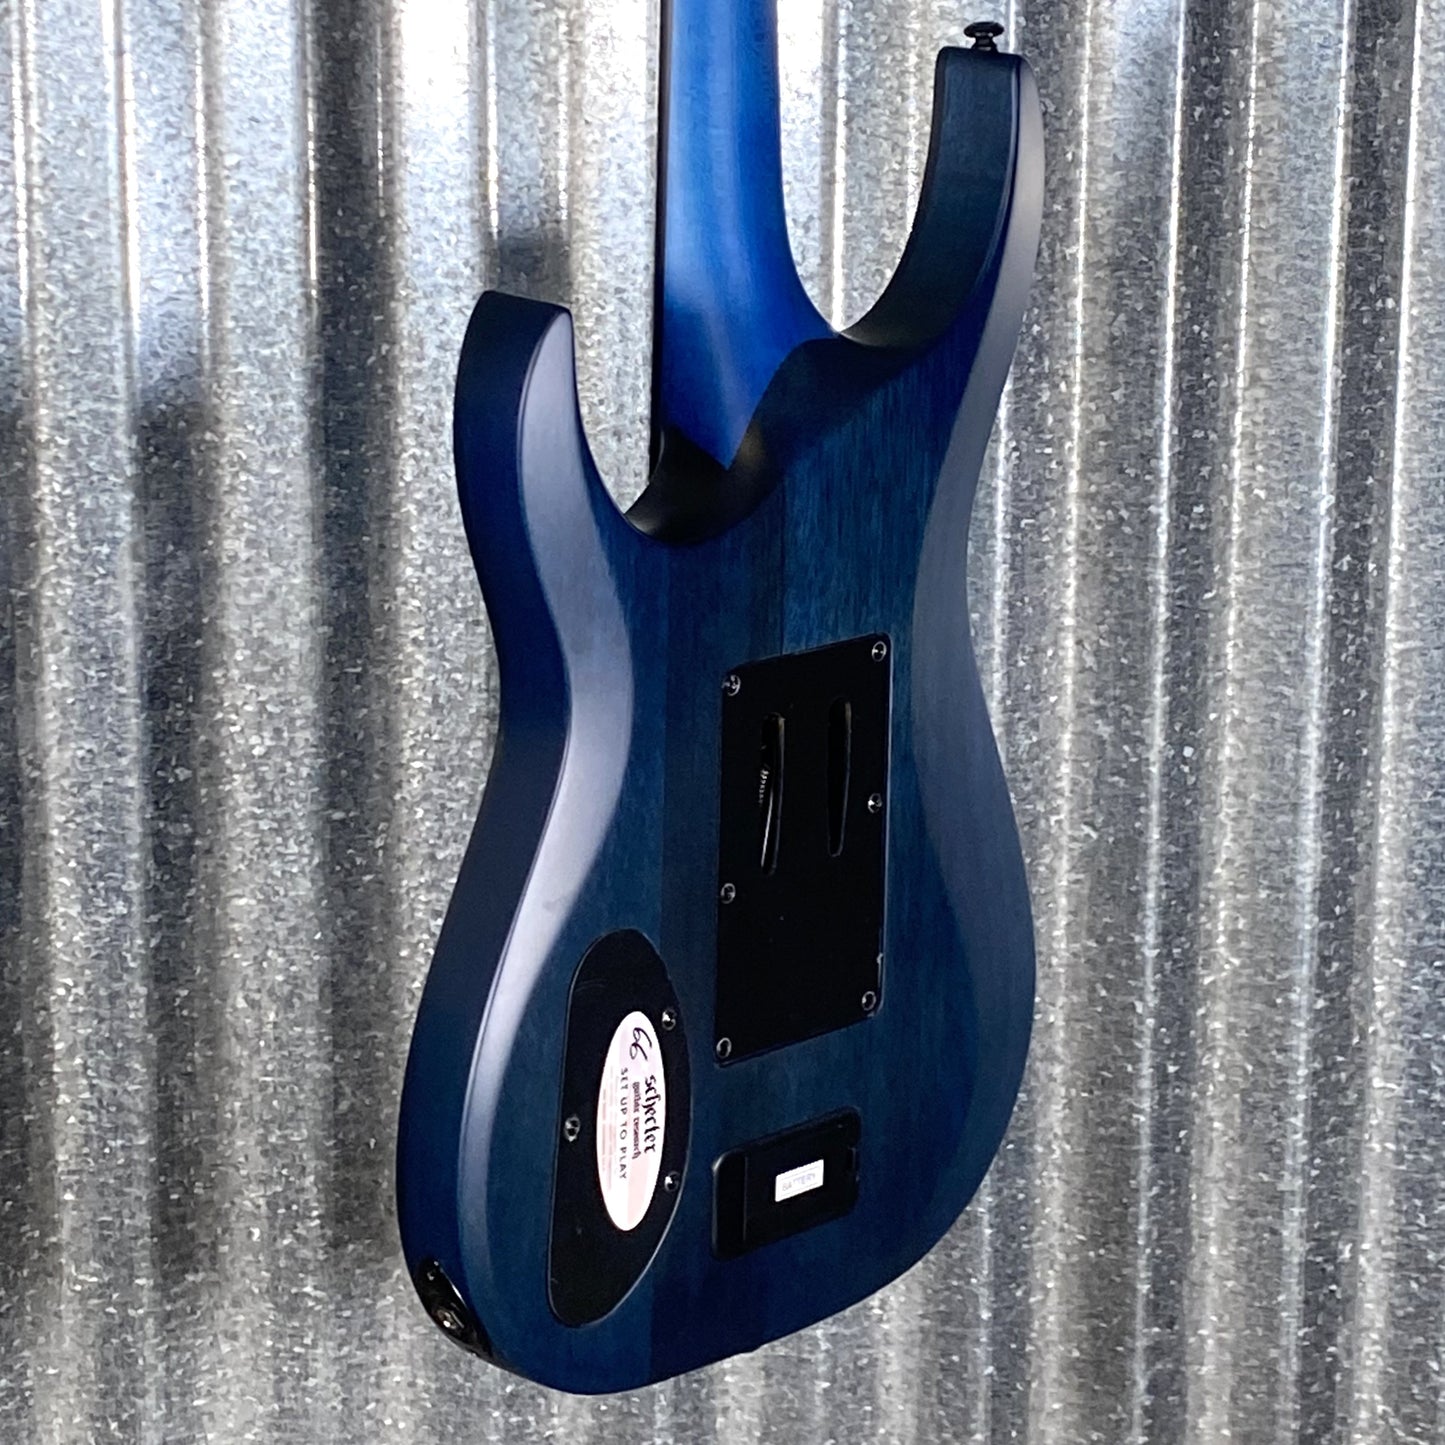 Schecter Banshee GT FR Flame Top Floyd Rose Satin Trans Blue Black Stripe Guitar #0657